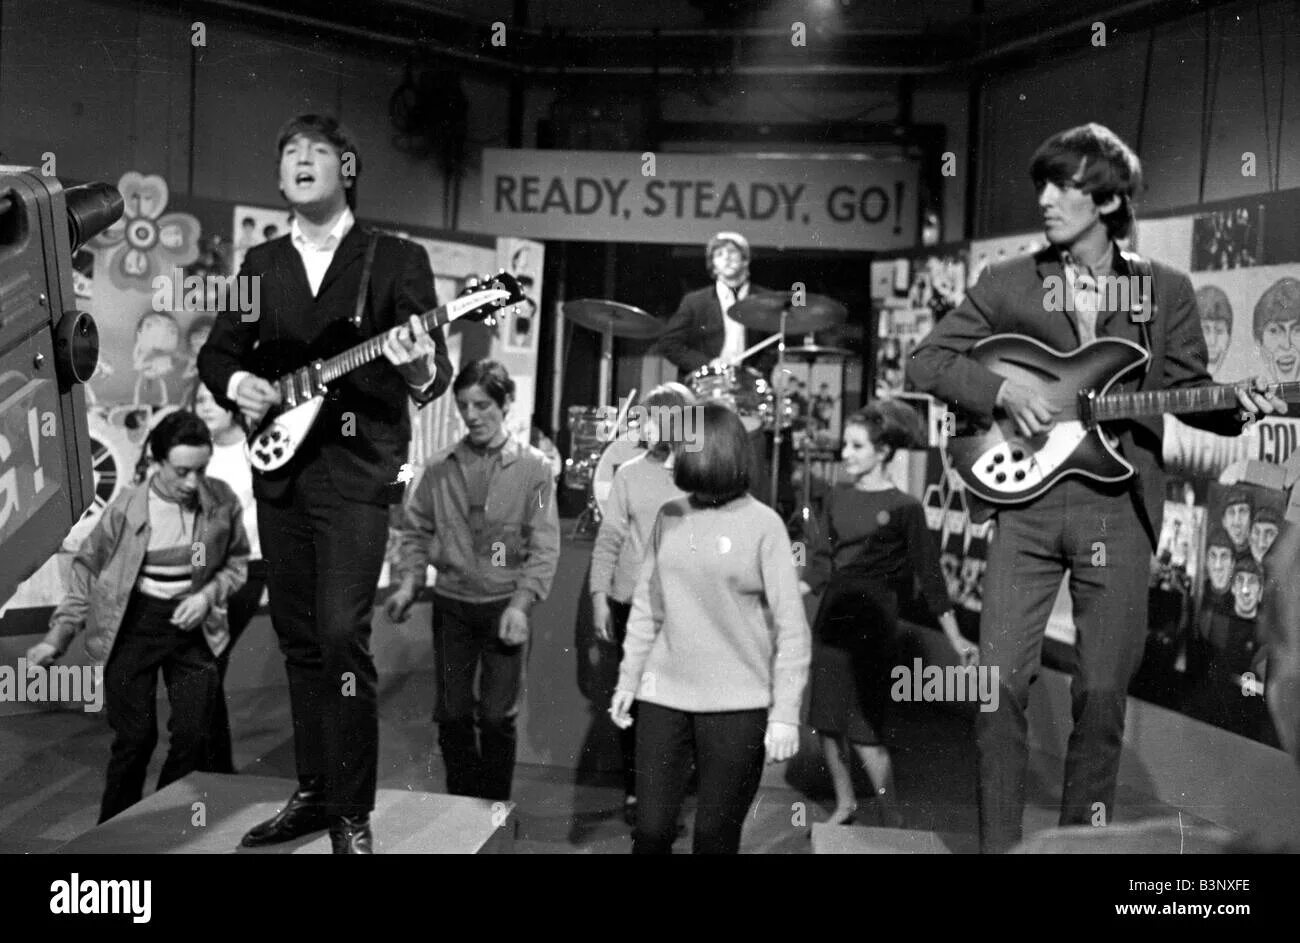 Ready steady перевод. Ready steady go 1964 Beatles. Beatles on ready steady go. Ready, steady, go!. The Beatles ready steady go 1964 photo.